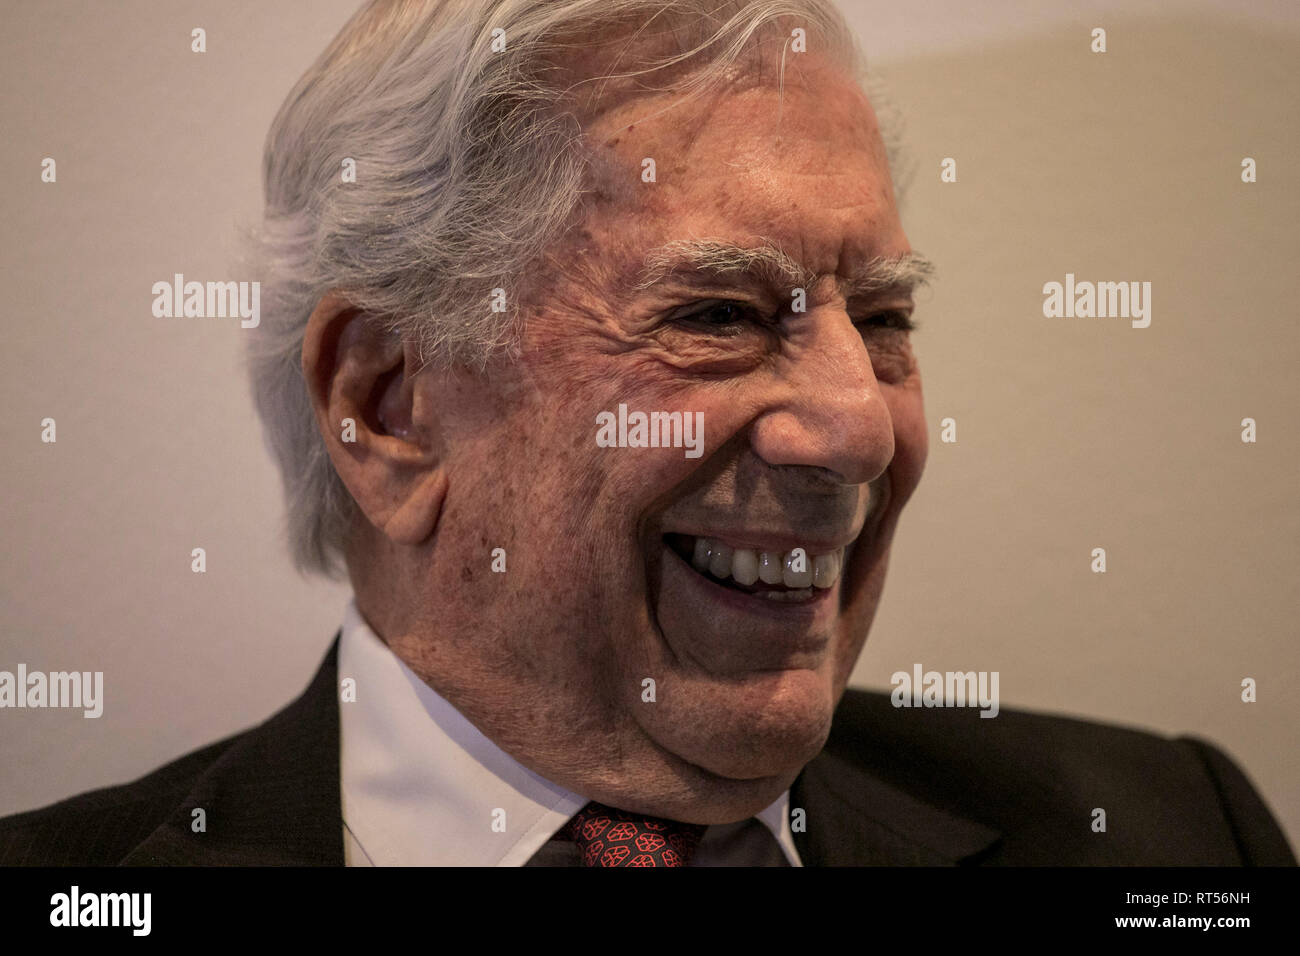 Mario Vargas Llosa während der Konferenz gesehen. Eröffnungskonferenz des 38. Ausgabe der ARCO Madrid mit Mario Vargas Llosa, der peruanische Schriftsteller gilt als einer der wichtigsten zeitgenössischen Romanciers und Essayisten. Stockfoto